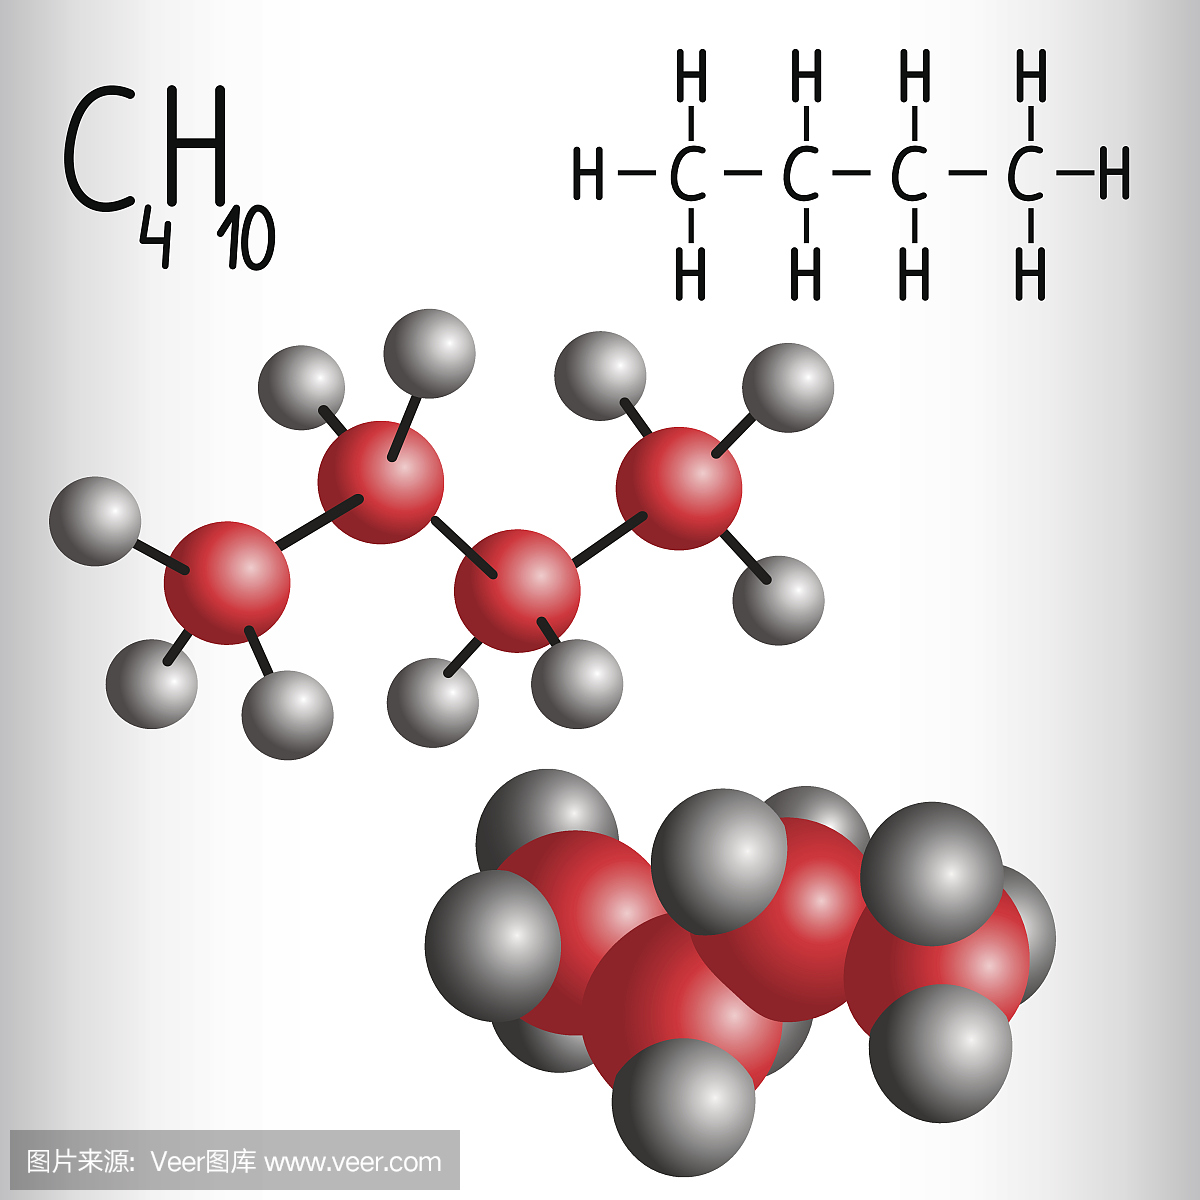 丁烷C4H10的化学式和分子模型